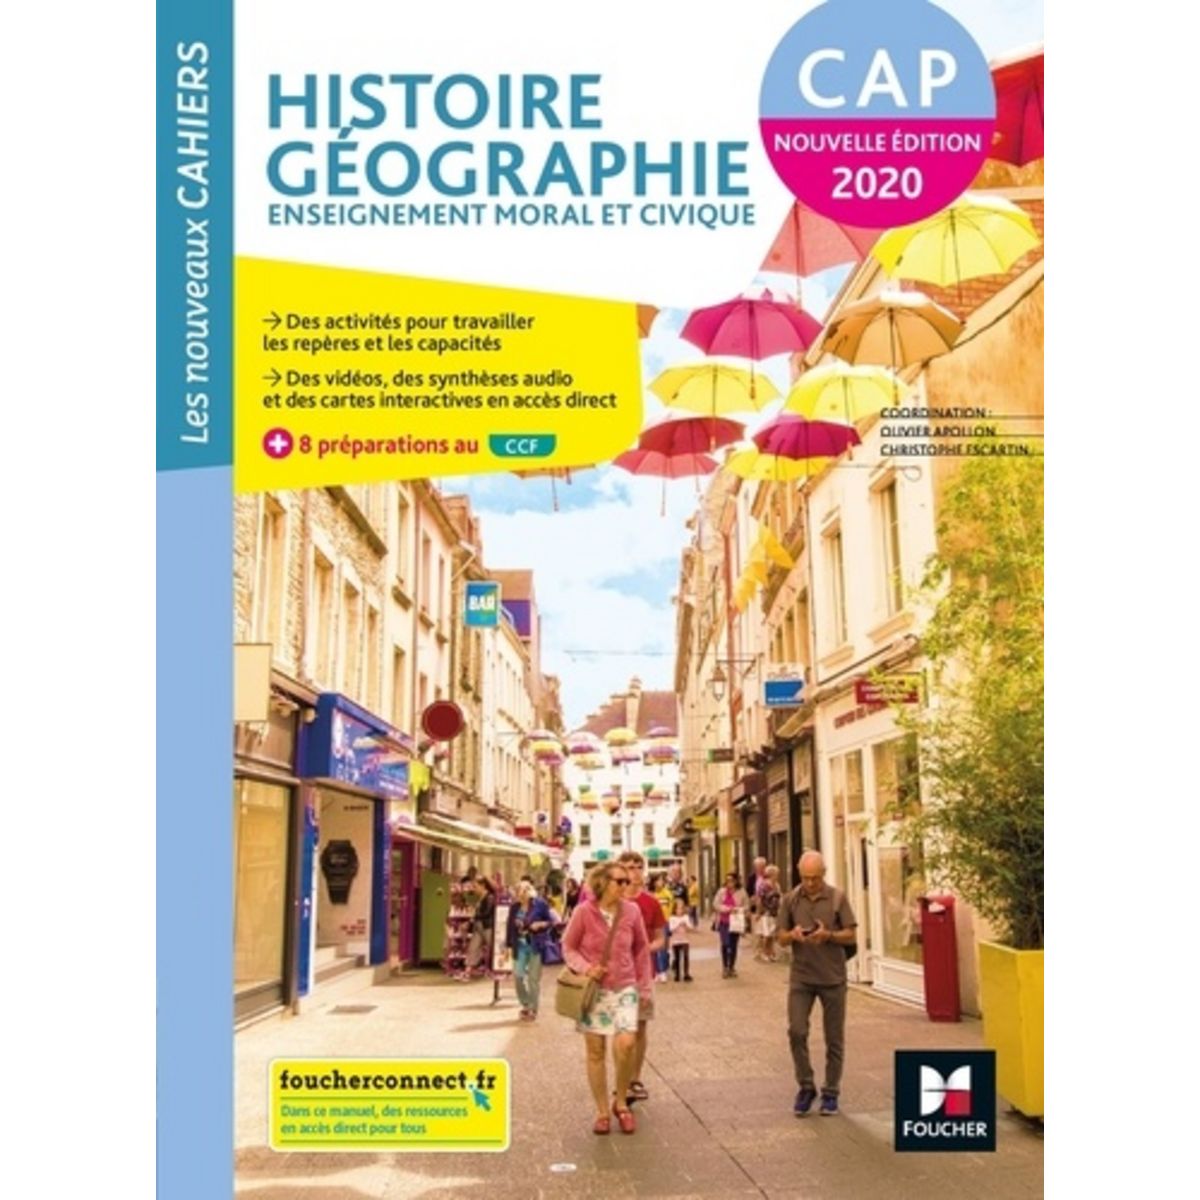 Histoire Geographie Enseignement Moral Et Civique Cap Les Nouveaux Cahiers Edition 2020 6615